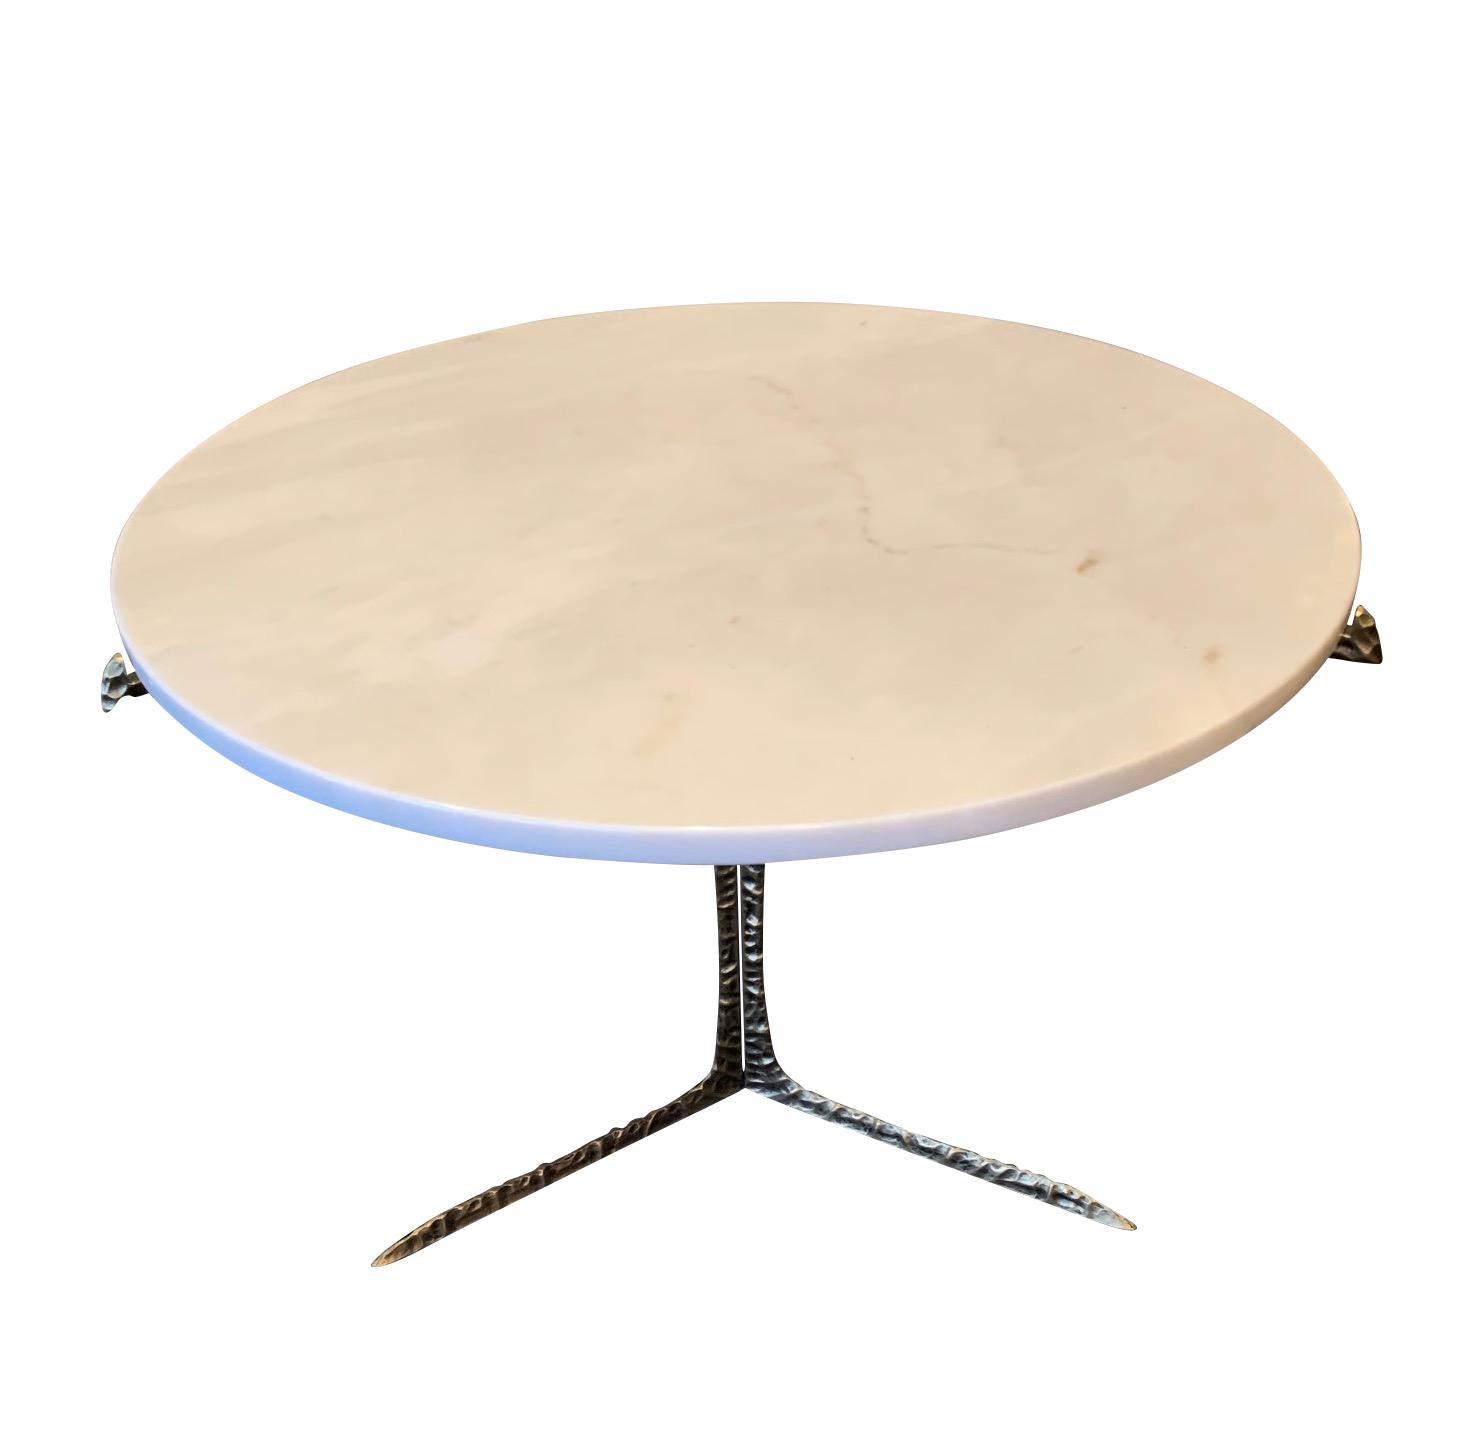 Table basse ronde épaisse à plateau en marbre
Pieds tripodes en laiton martelé
Également disponible avec un plateau en lucite (F2620).